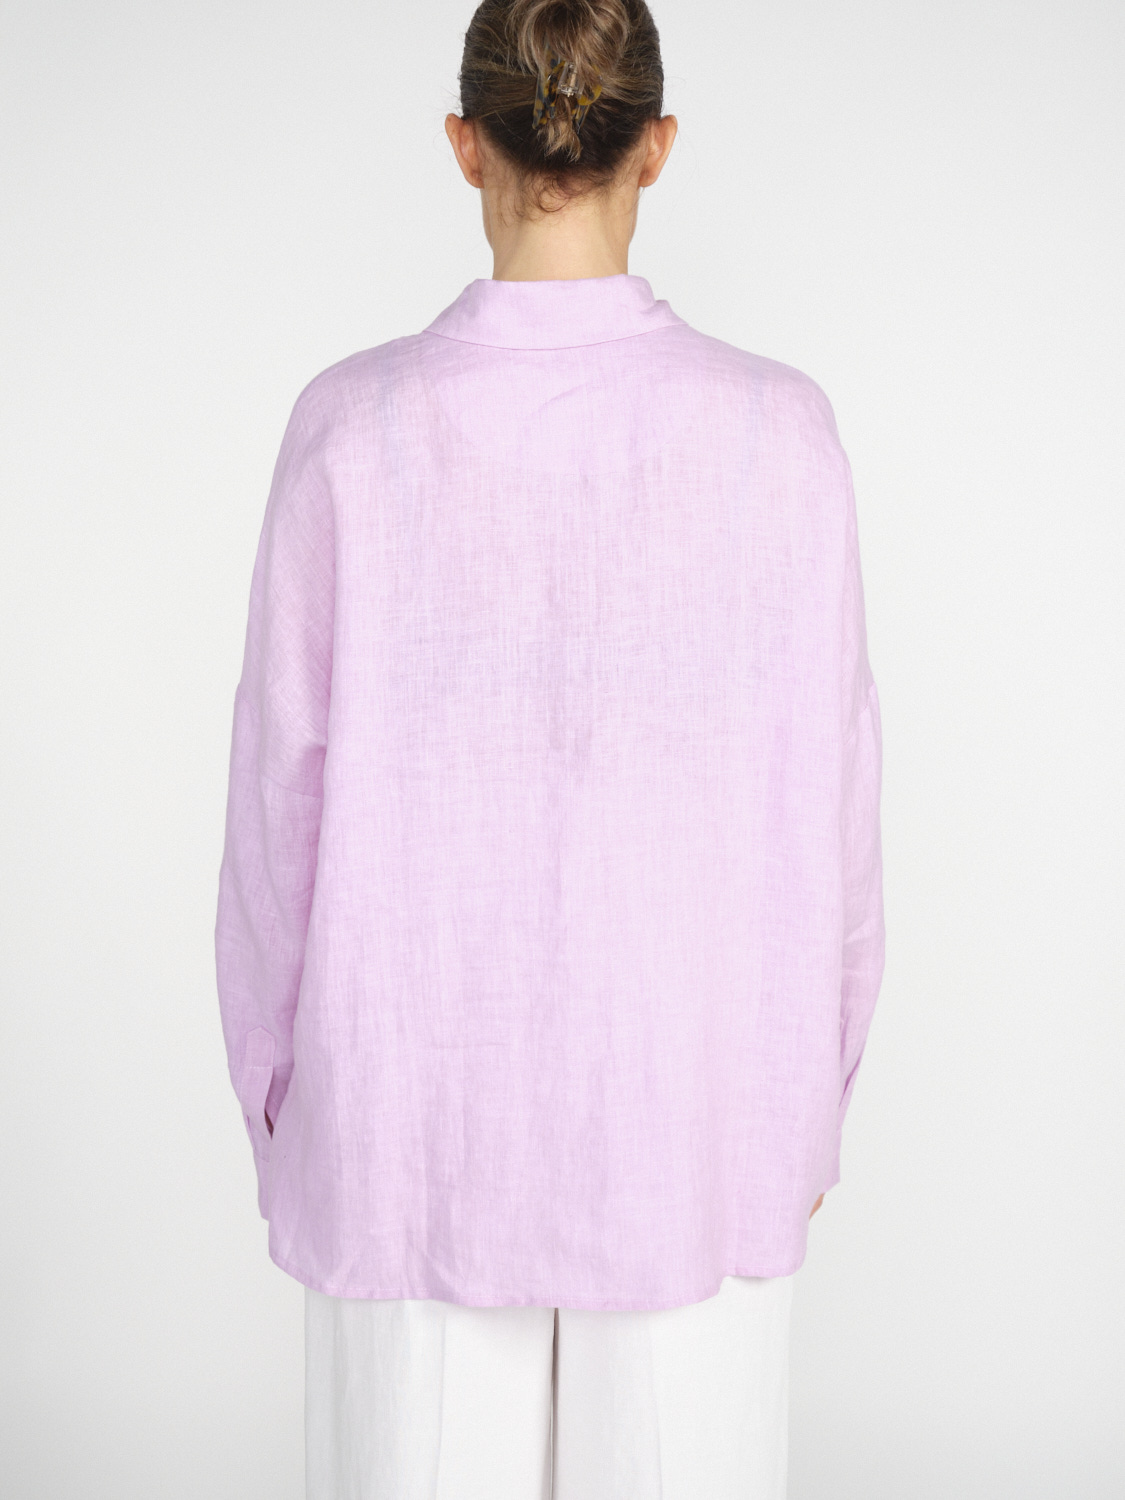 an an londree Summer – linen blouse with playful details  rosa XS